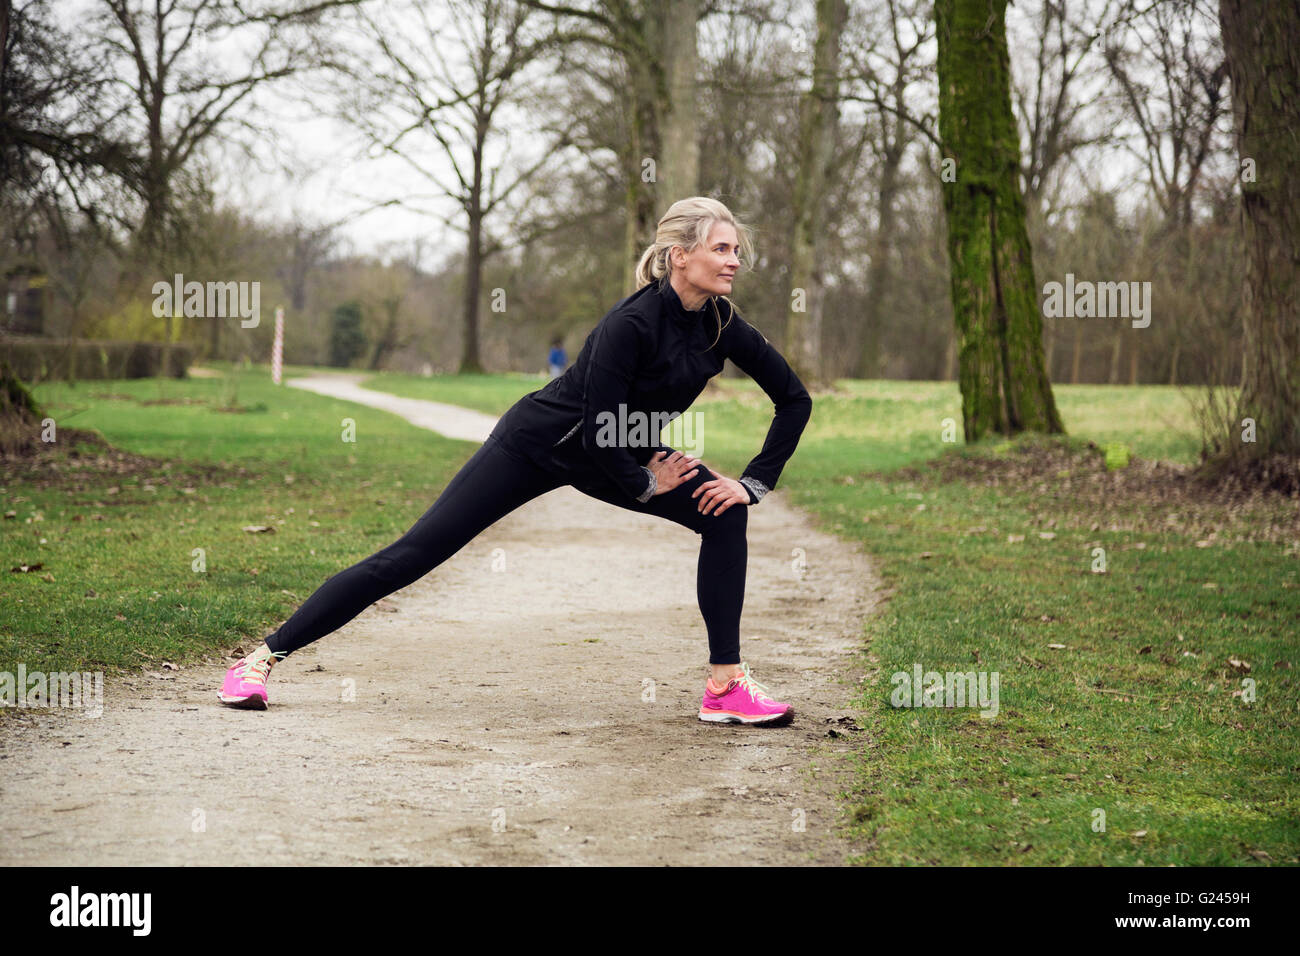 Mujer estirar sus piernas en el parque antes de tener una carrera. Invierno frío día con actividad deportiva Foto de stock